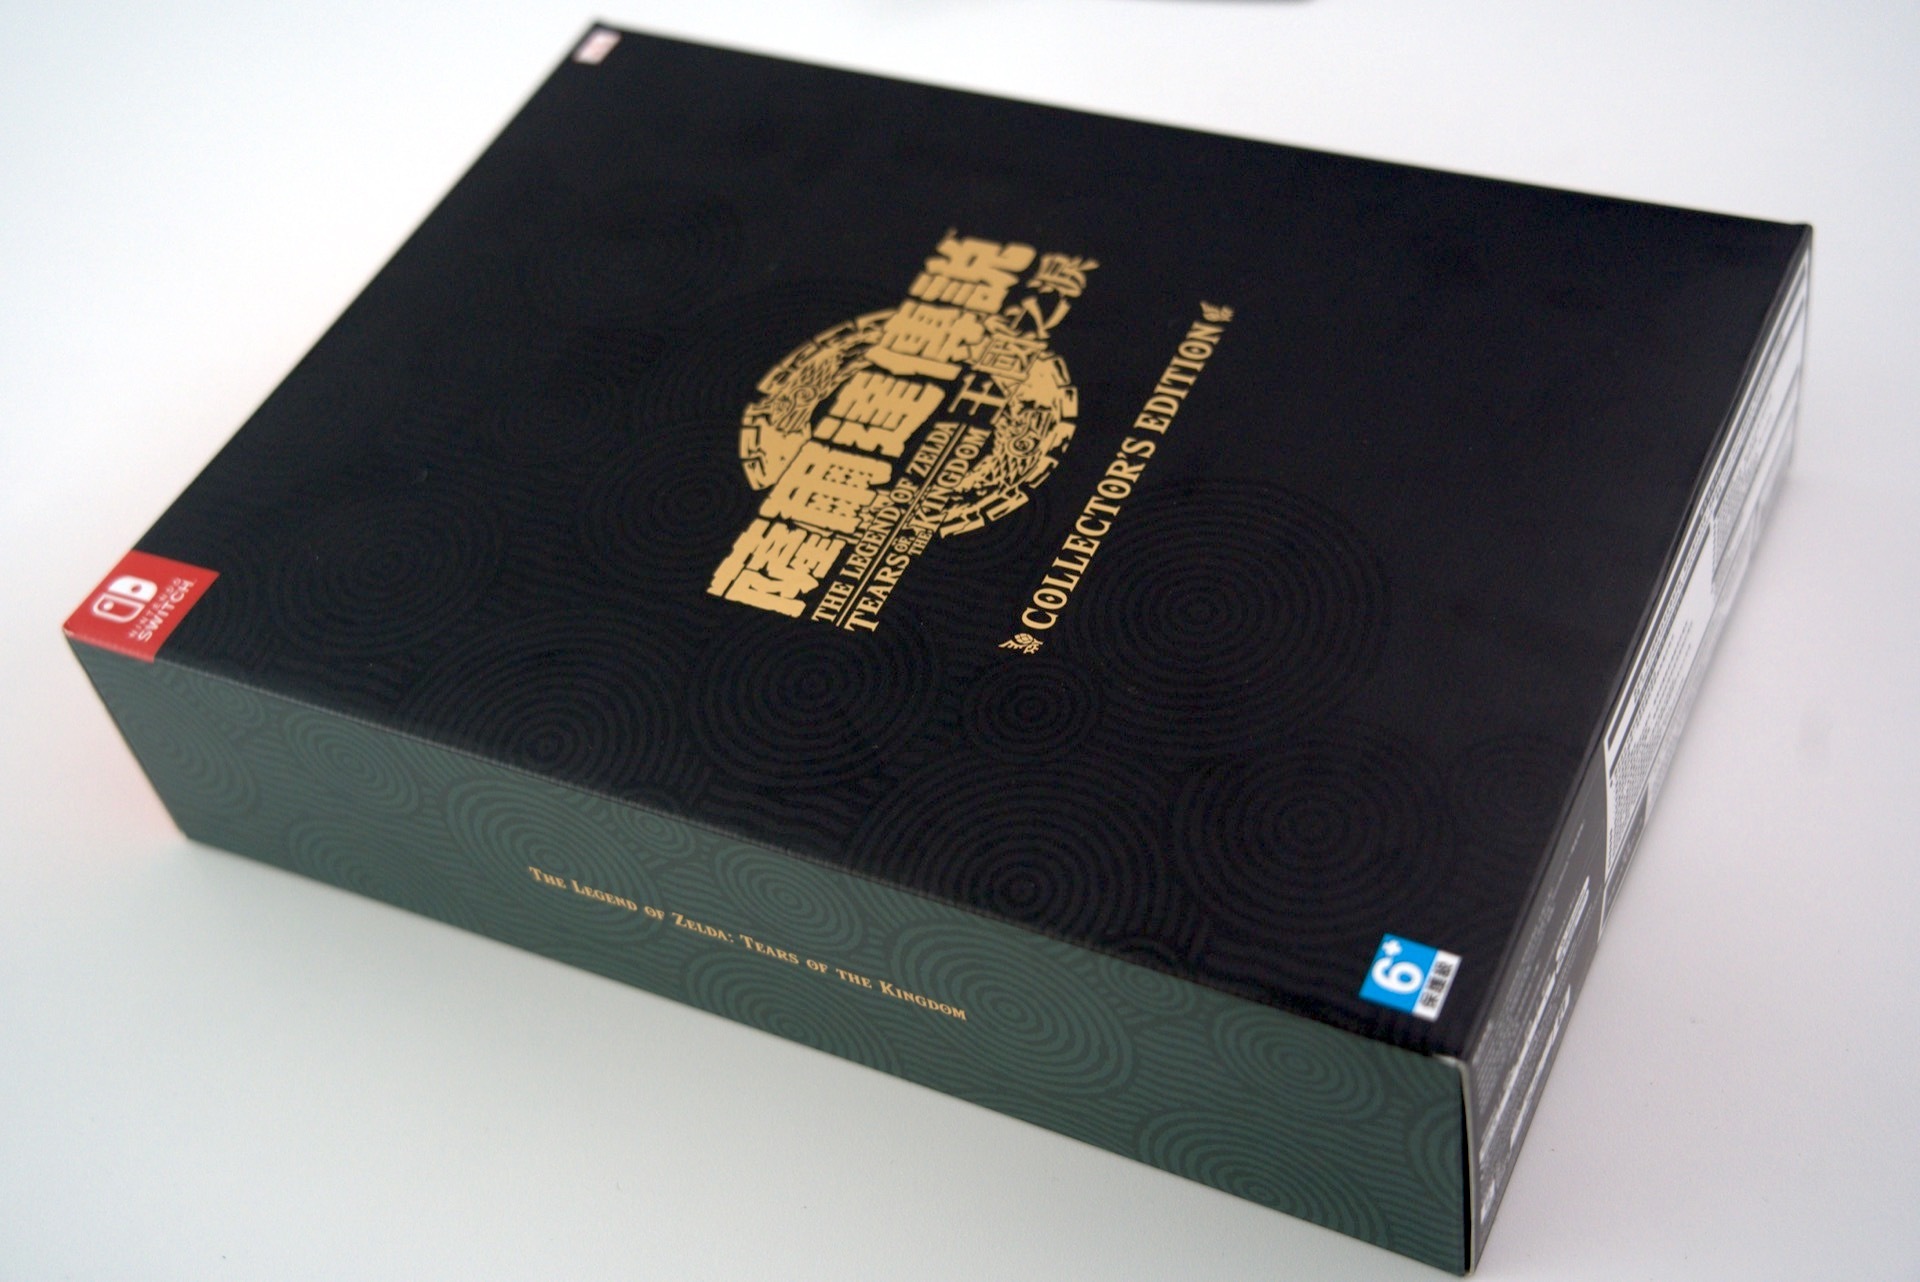 【开箱】《塞尔达传说：王国之泪》实体典藏版「Collector's Edition」内容物一览